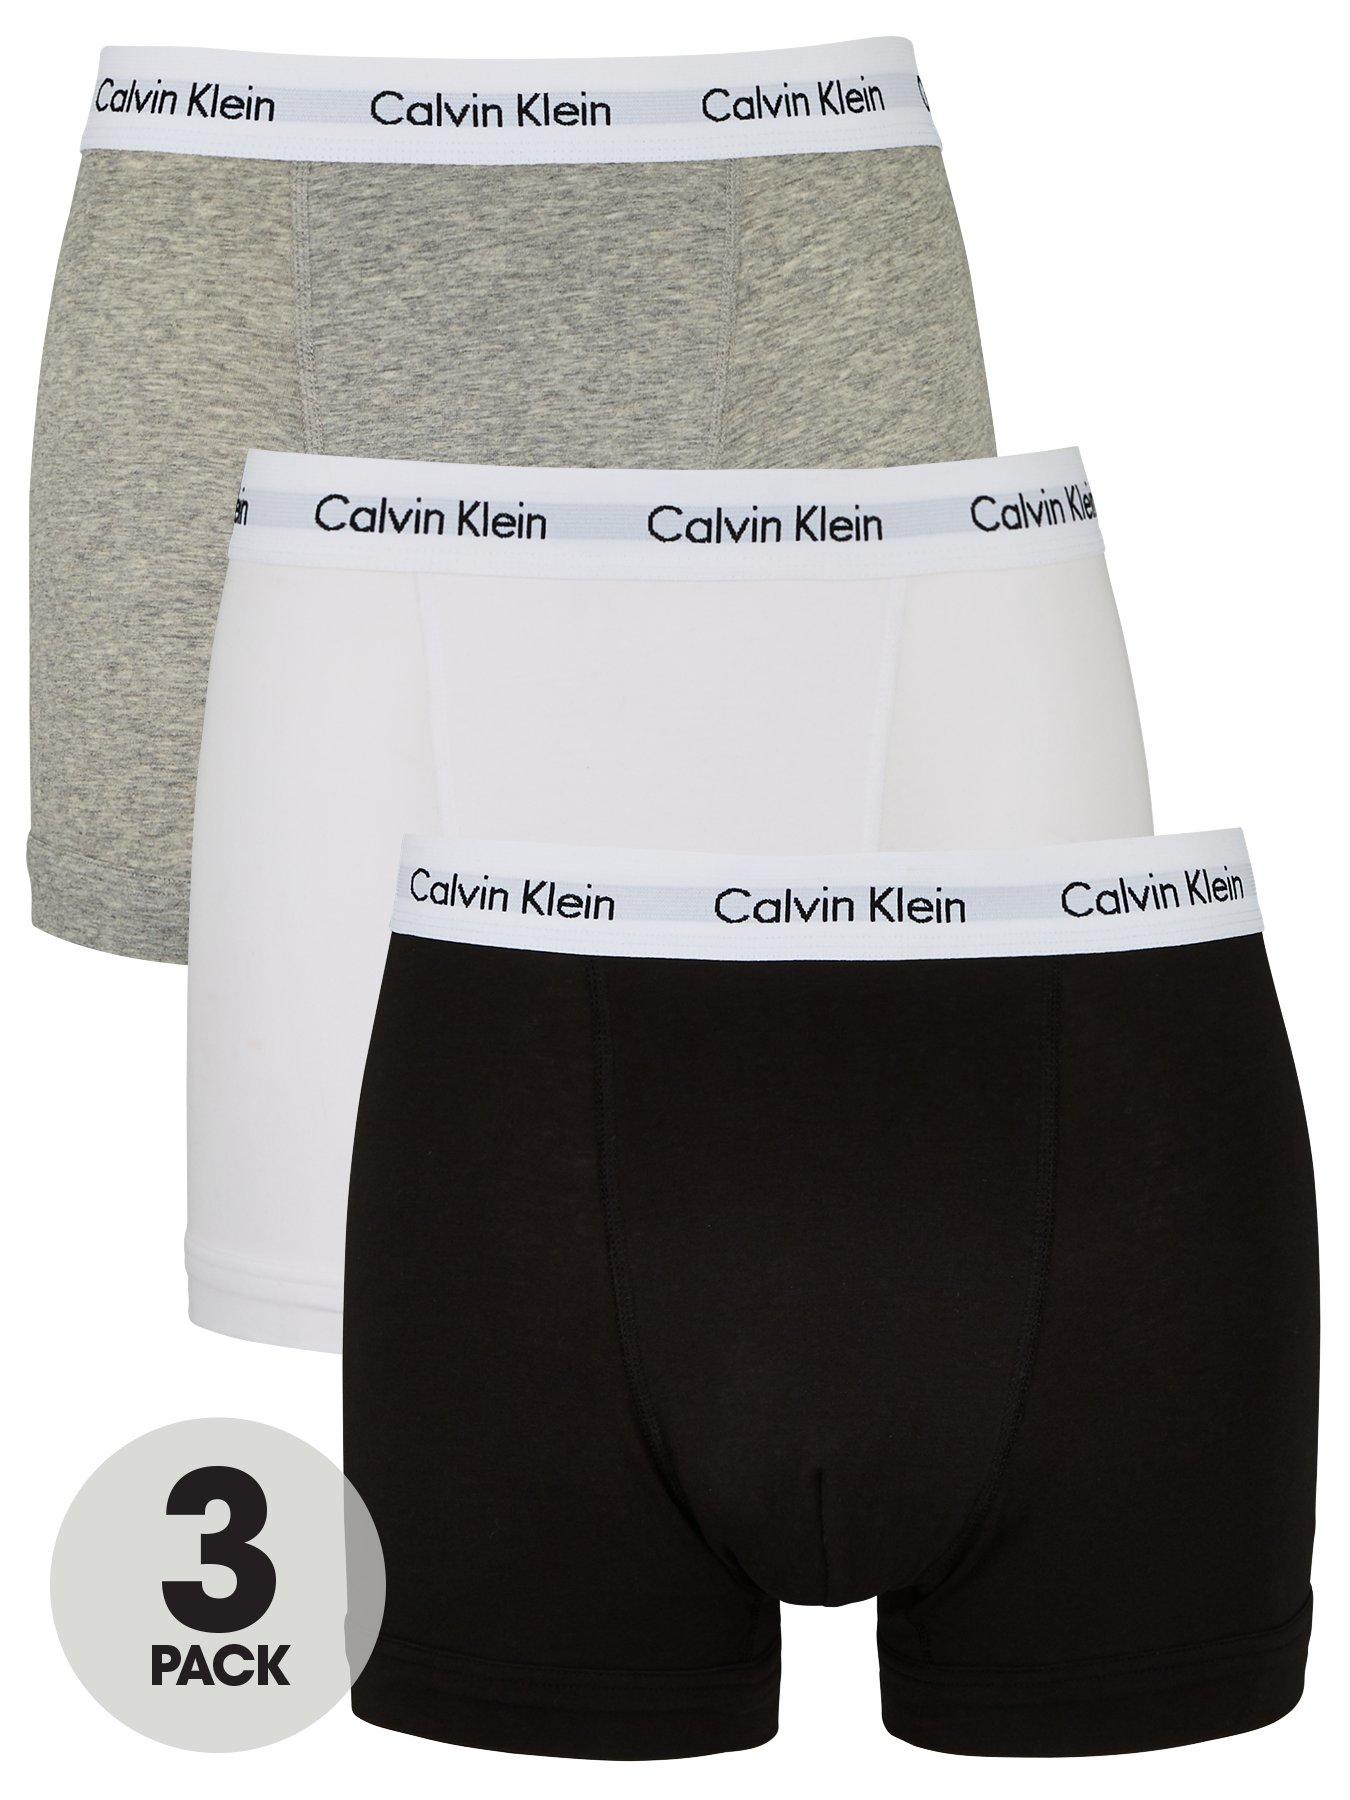 calvin klein men's basics button front boxer briefs